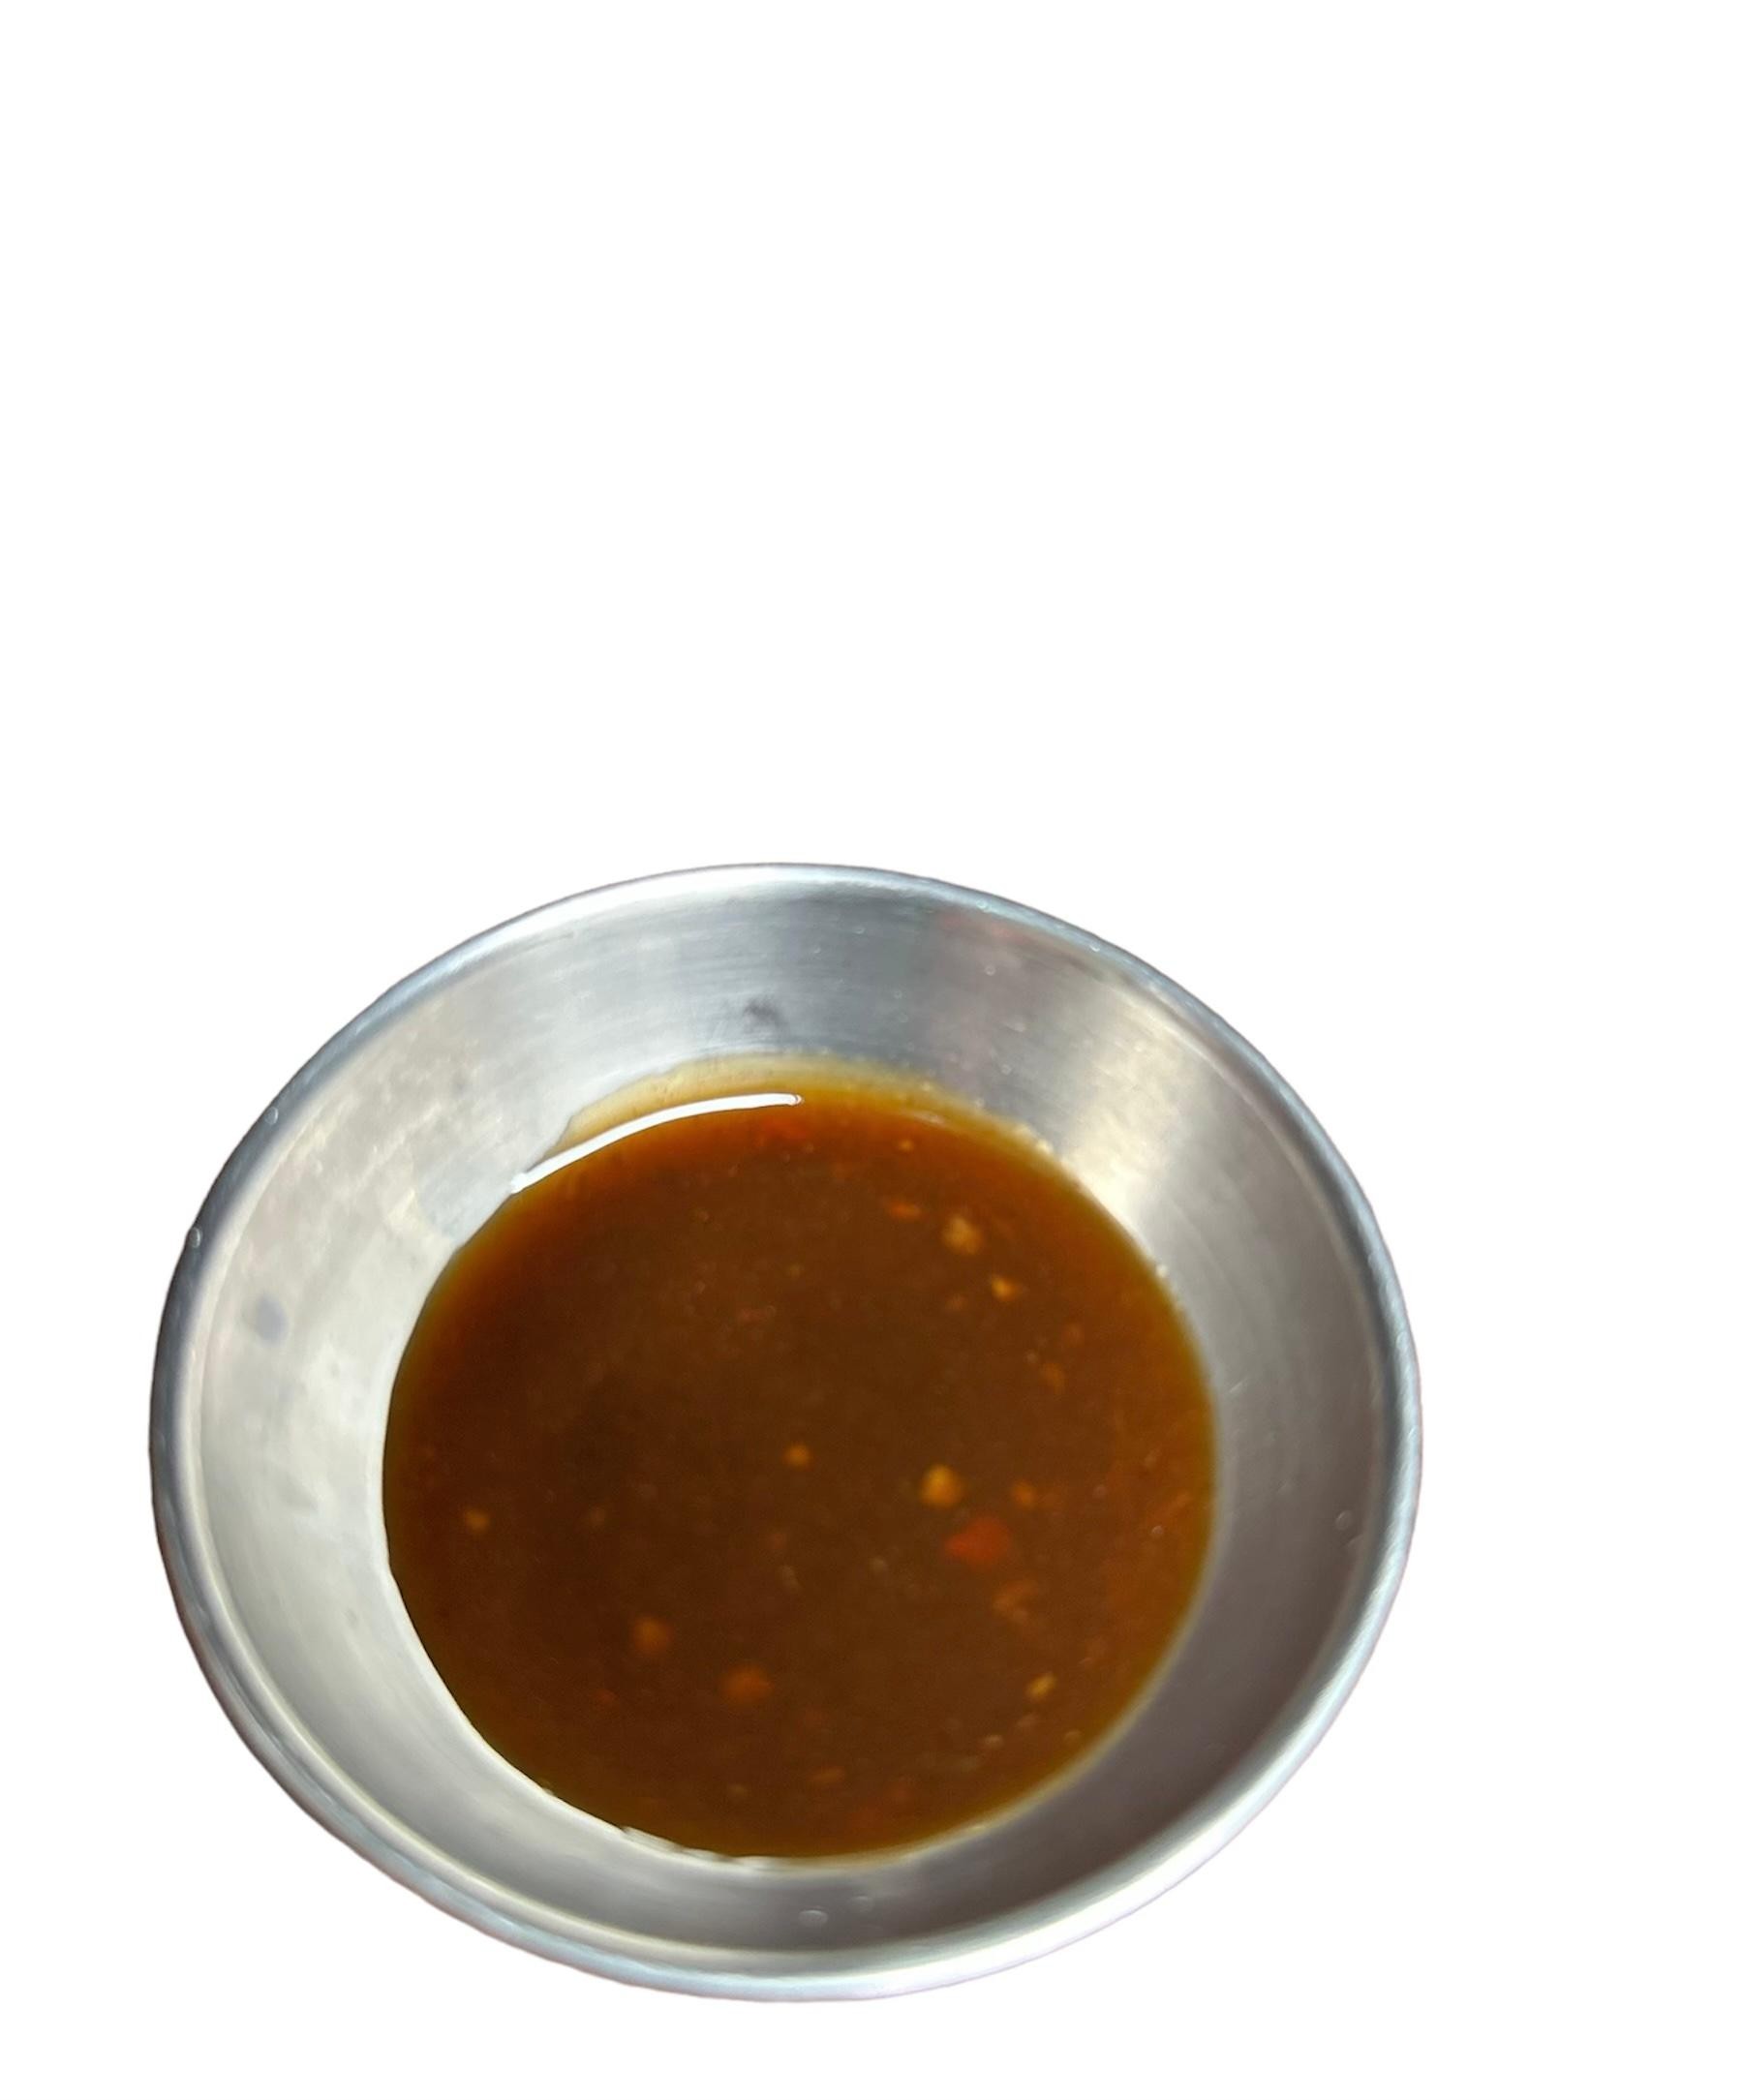 Spicy bulgogi sauce